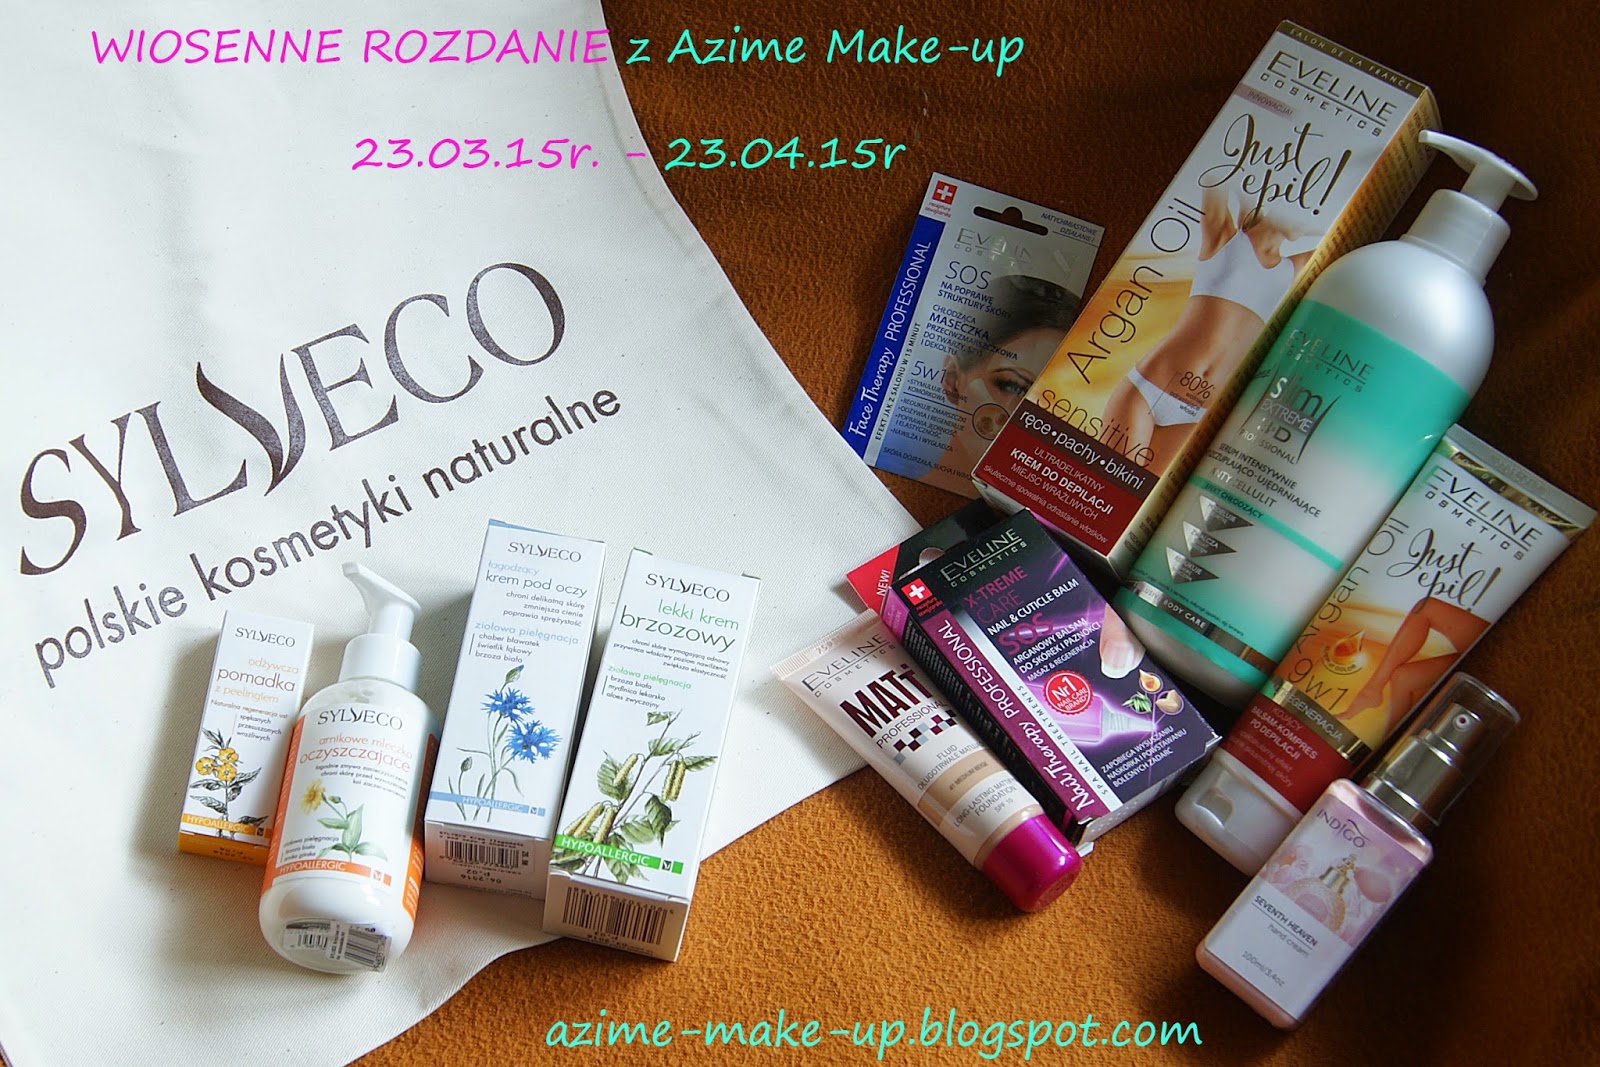 http://azime-make-up.blogspot.com/2015/03/197-wiosenne-rozdanie-z-azime-make-up.html